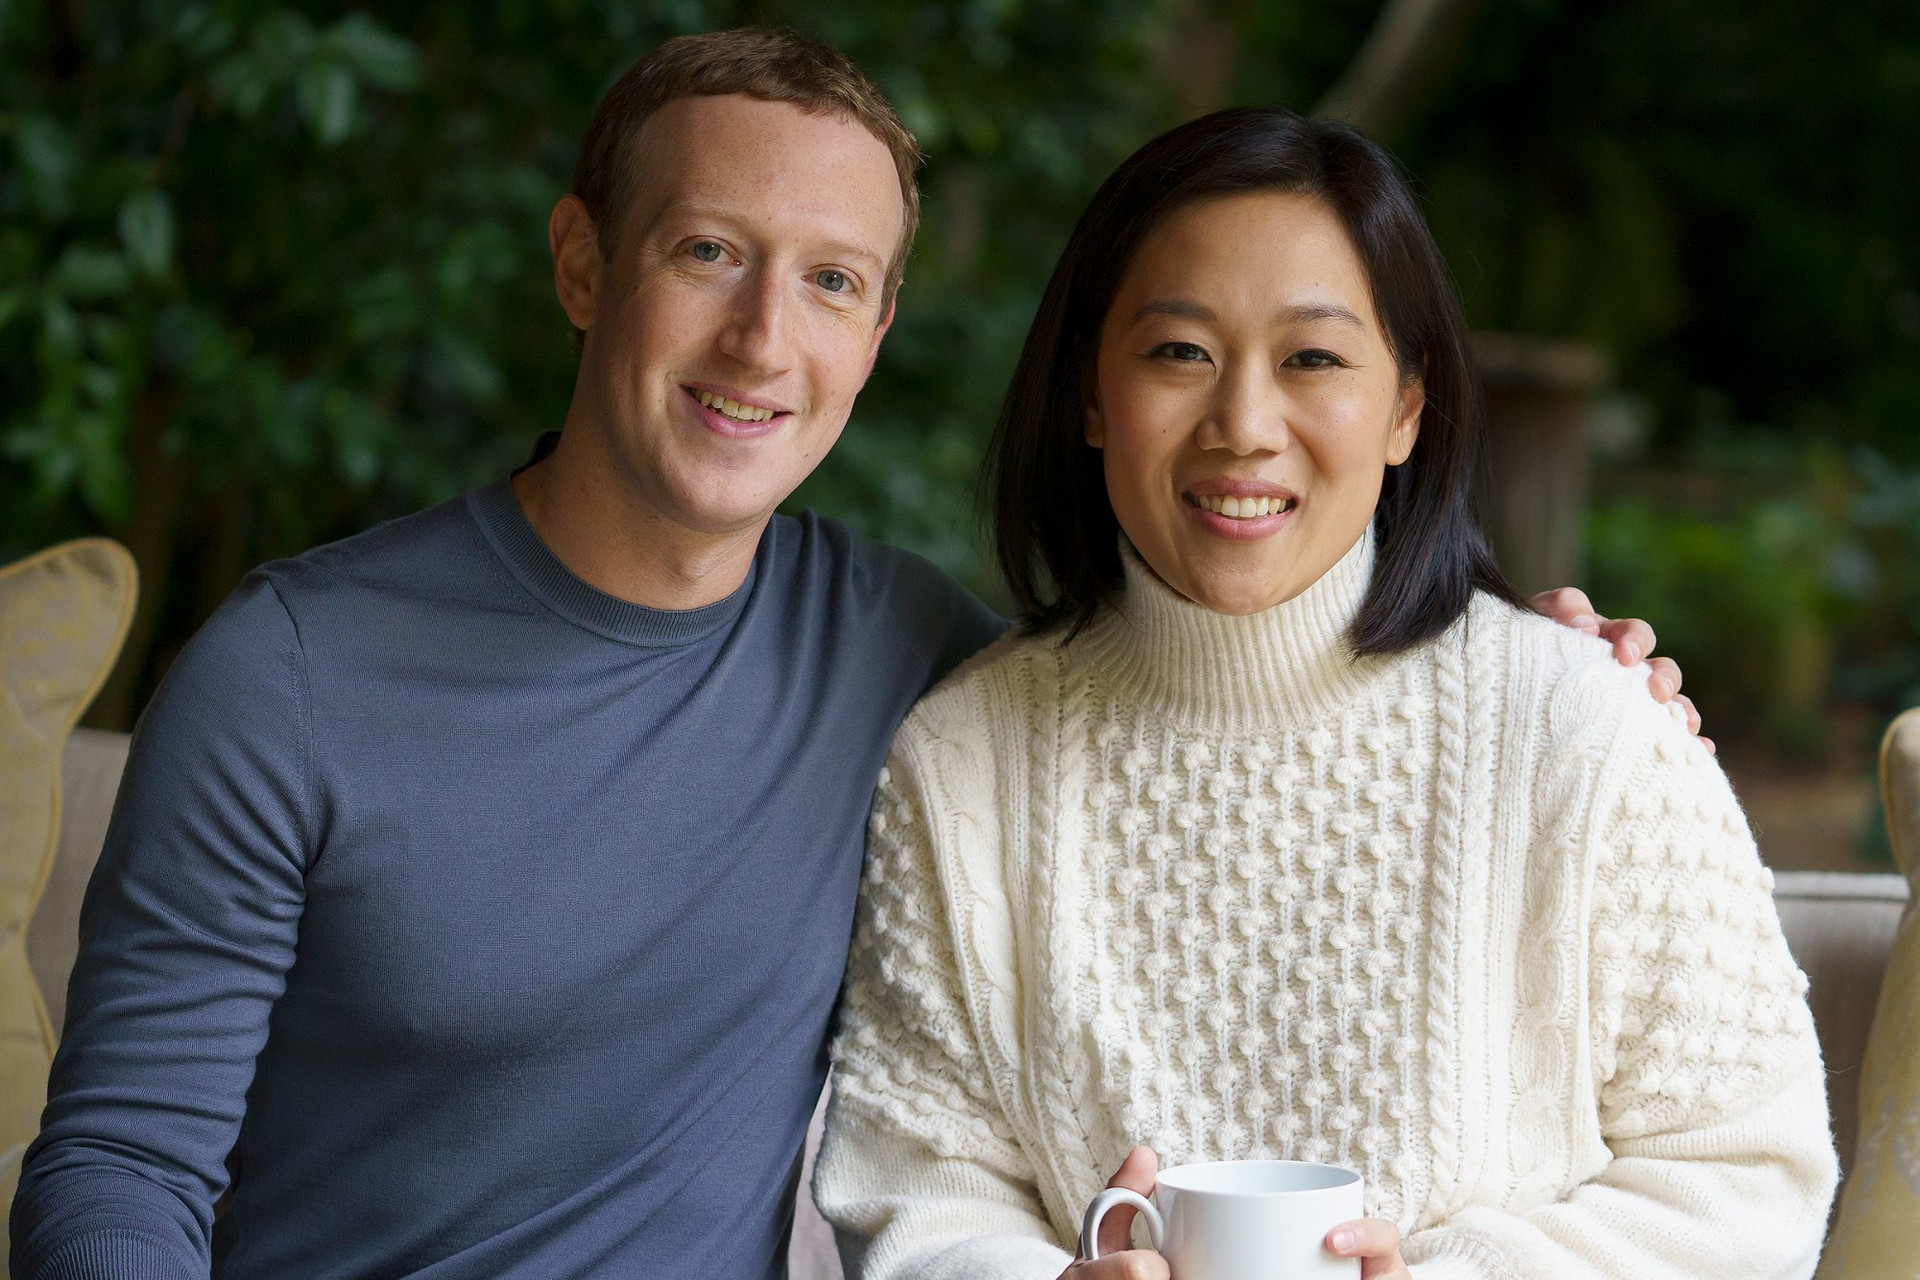 Con dâu tỷ phú giàu nhất châu Á, vợ nhà sáng lập Facebook, Baidu đều có chung 1 ĐẶC ĐIỂM về học vấn: Đúng ‘nồi nào úp vung nấy’, lấy chồng giàu xứng đáng!- Ảnh 2.